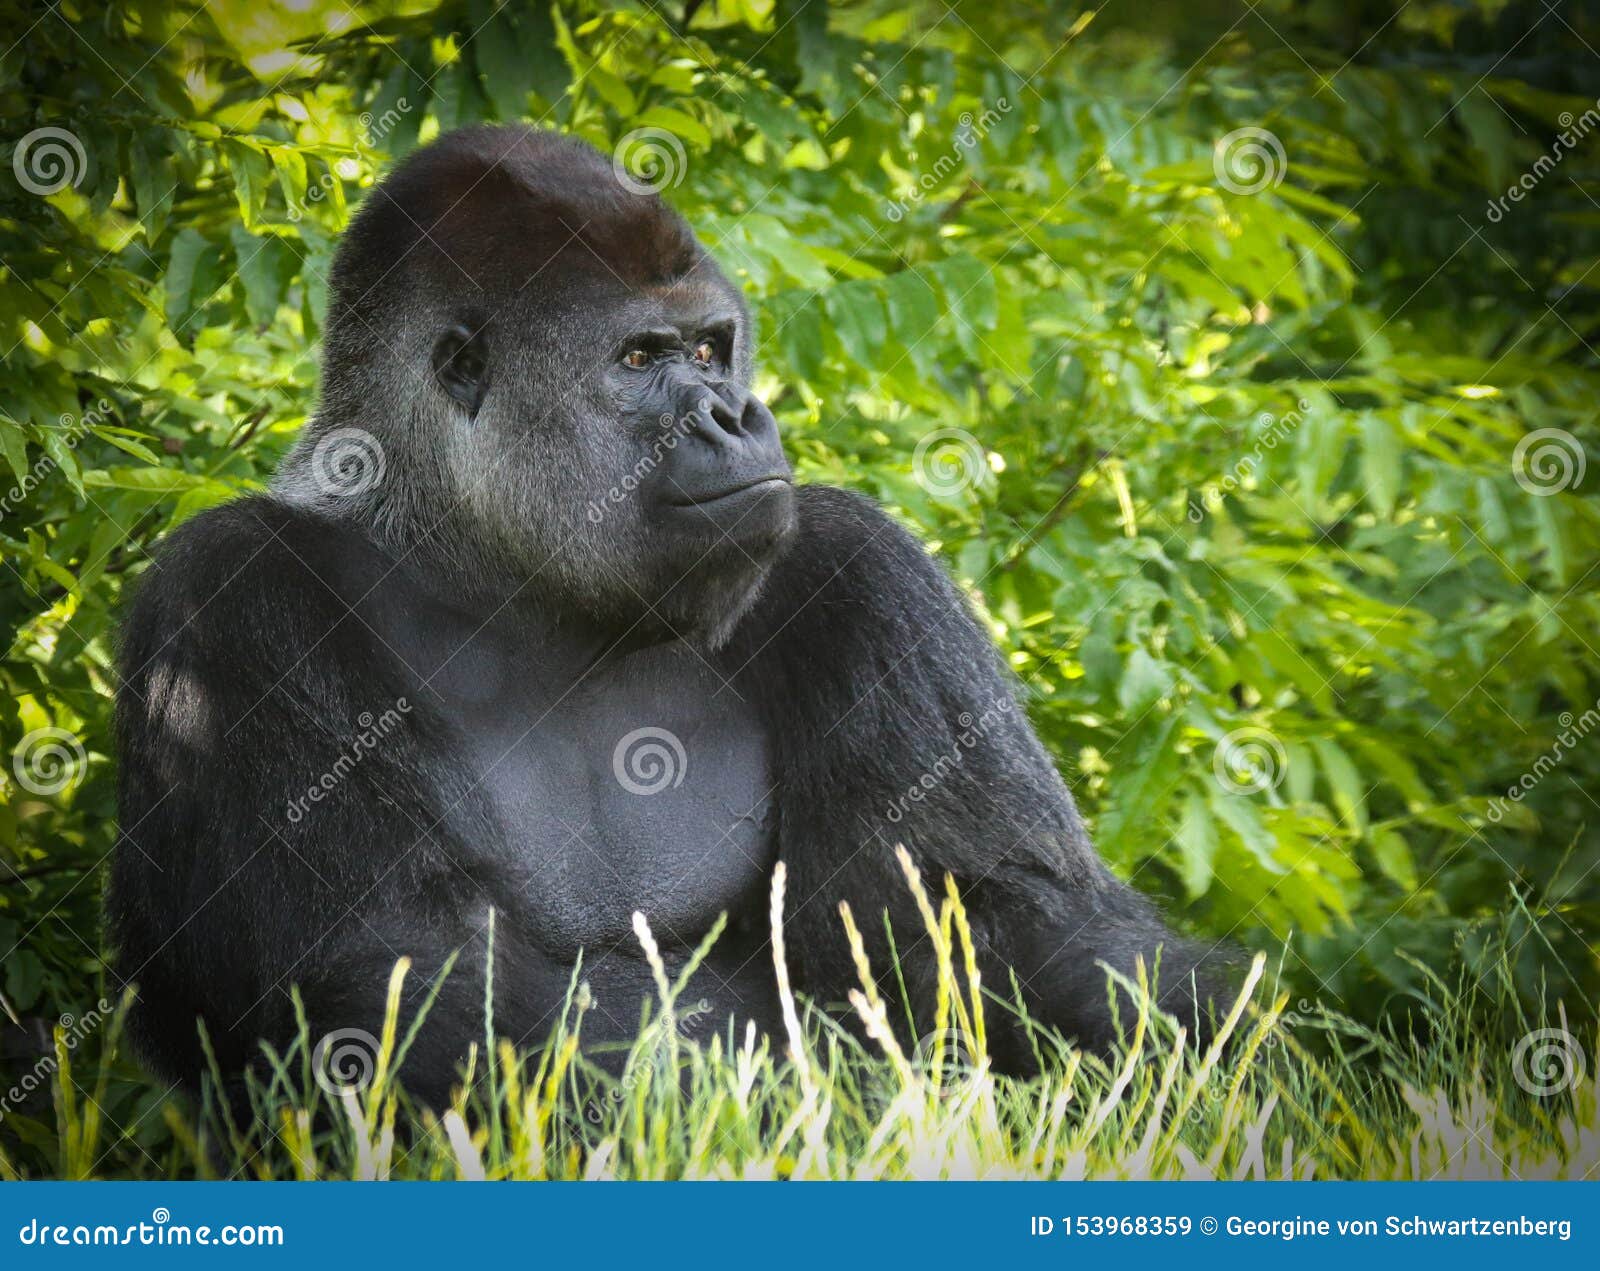 gorillas are ground-dwelling, predominantly herbivorous apes